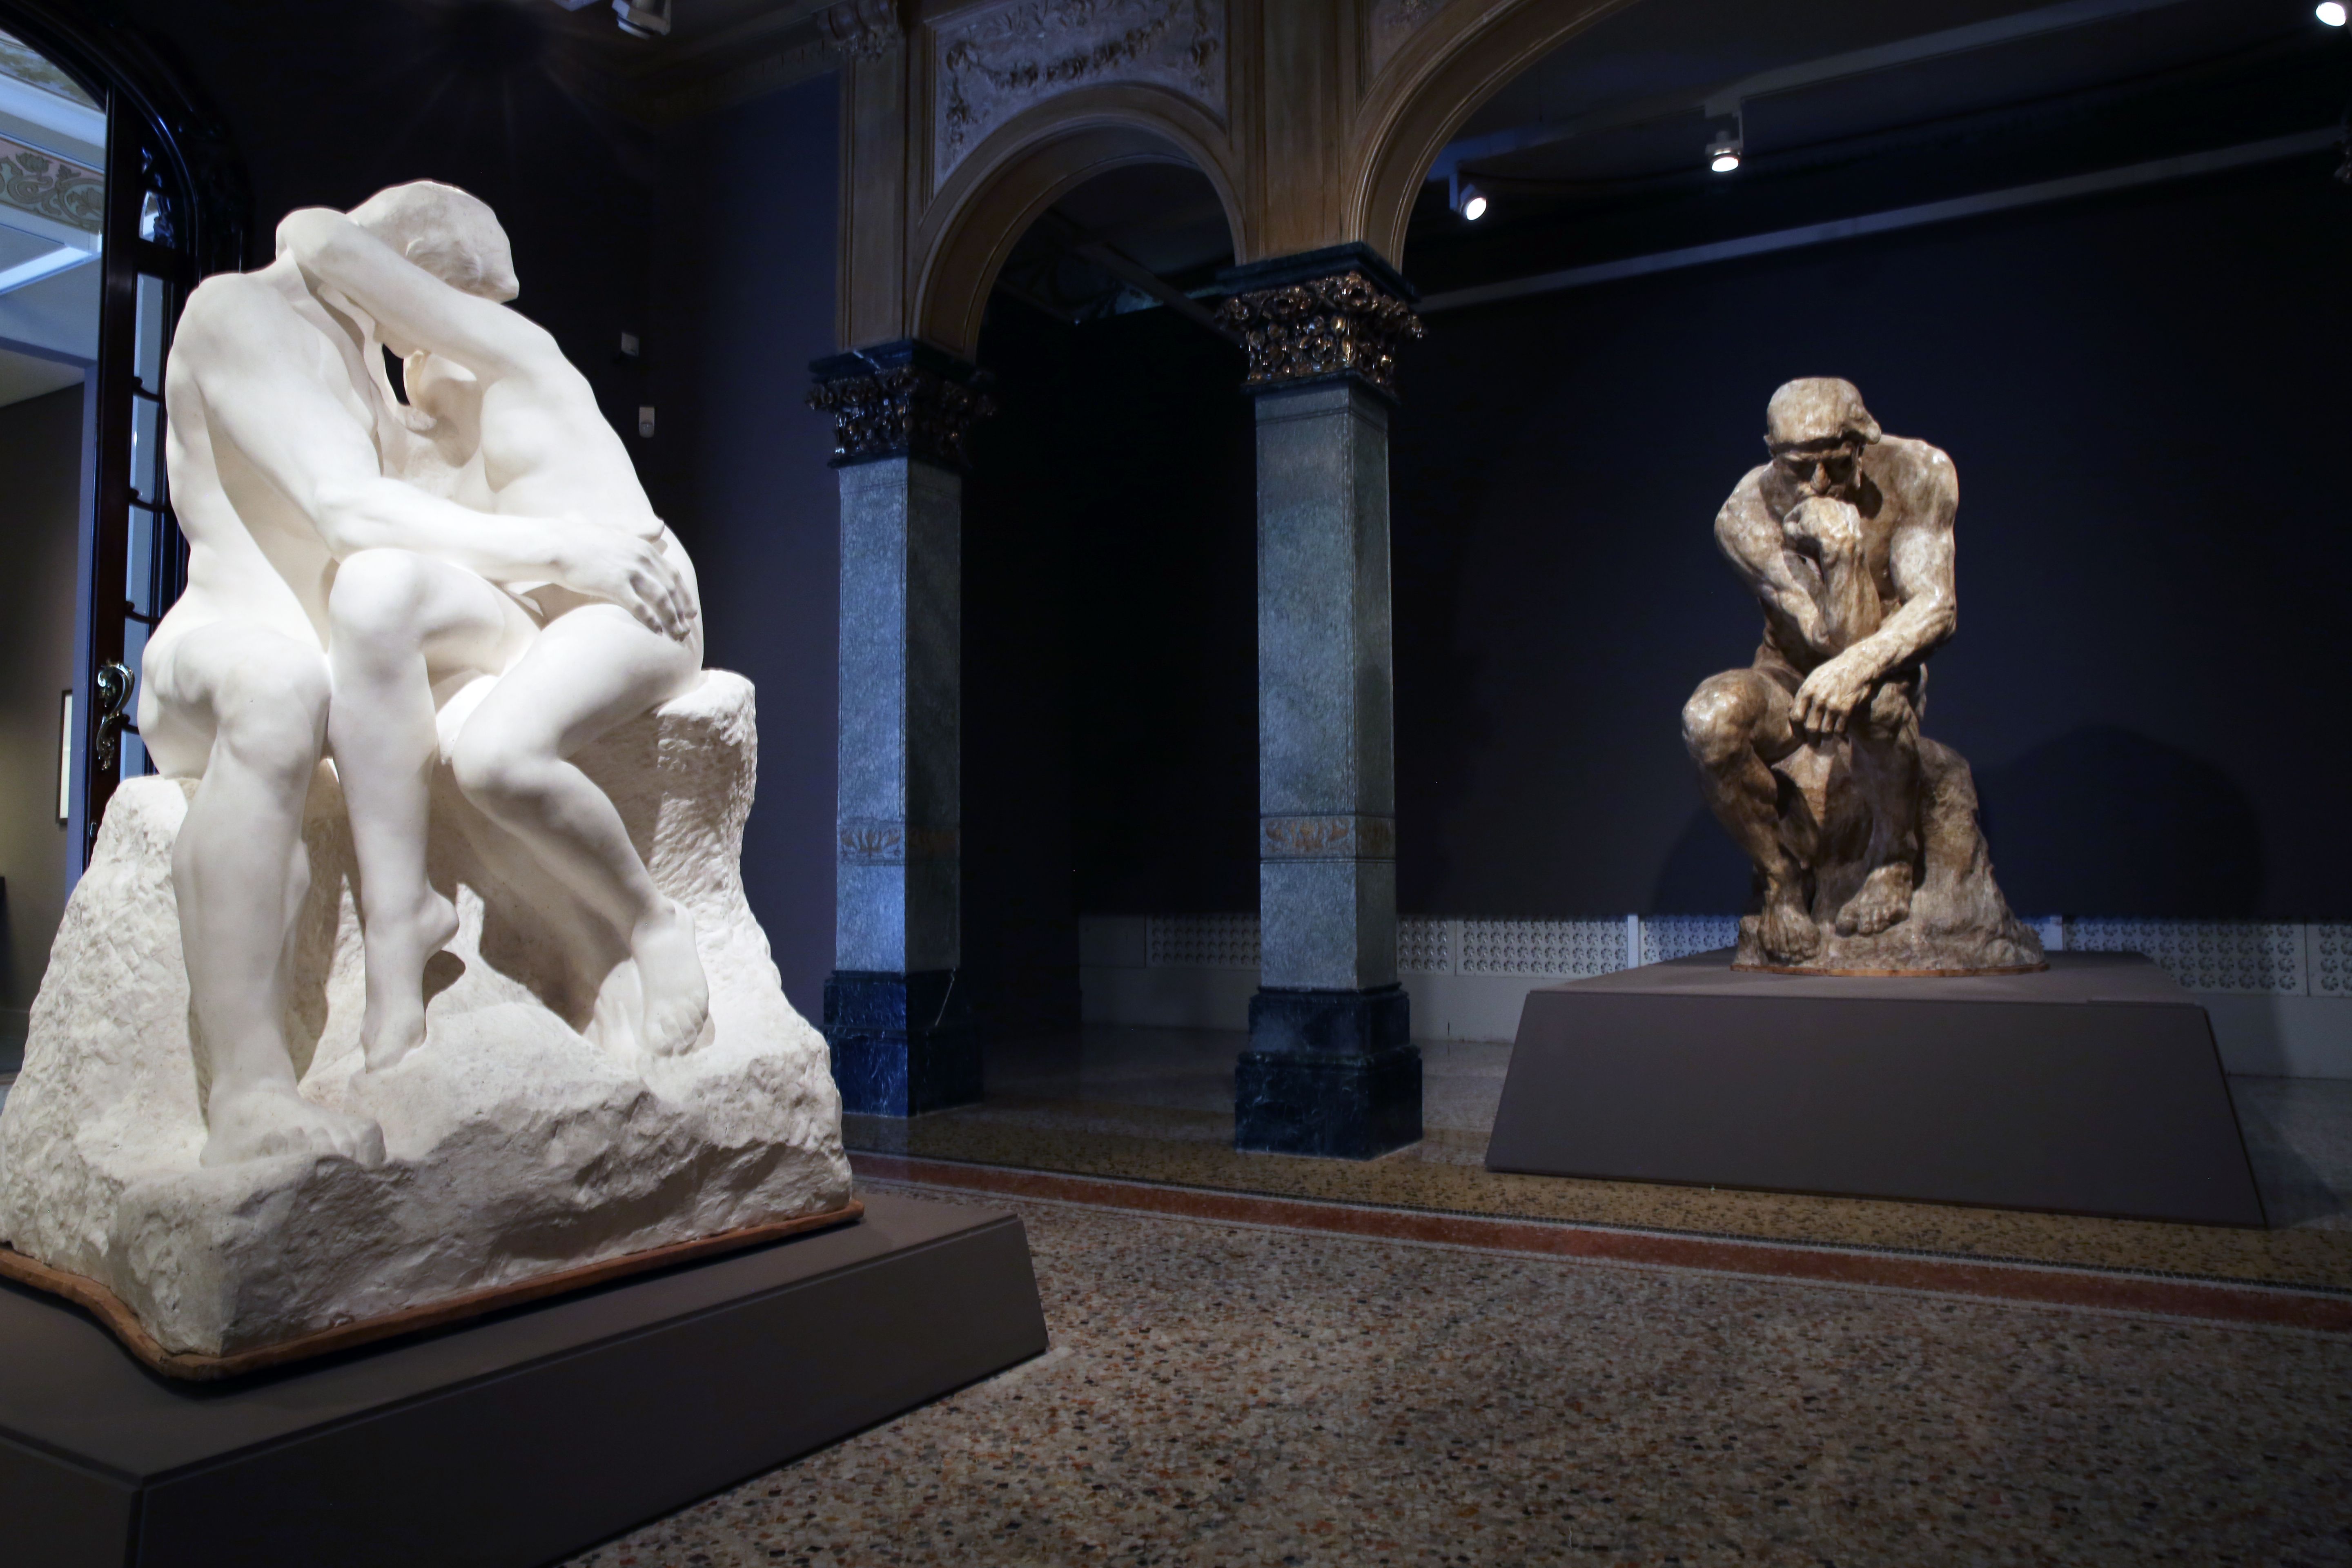 El infierno de Rodin, Exhibition, MAPFRE Foundation,  Casa Garriga Nogués, Barcelona: until 21 January 2018